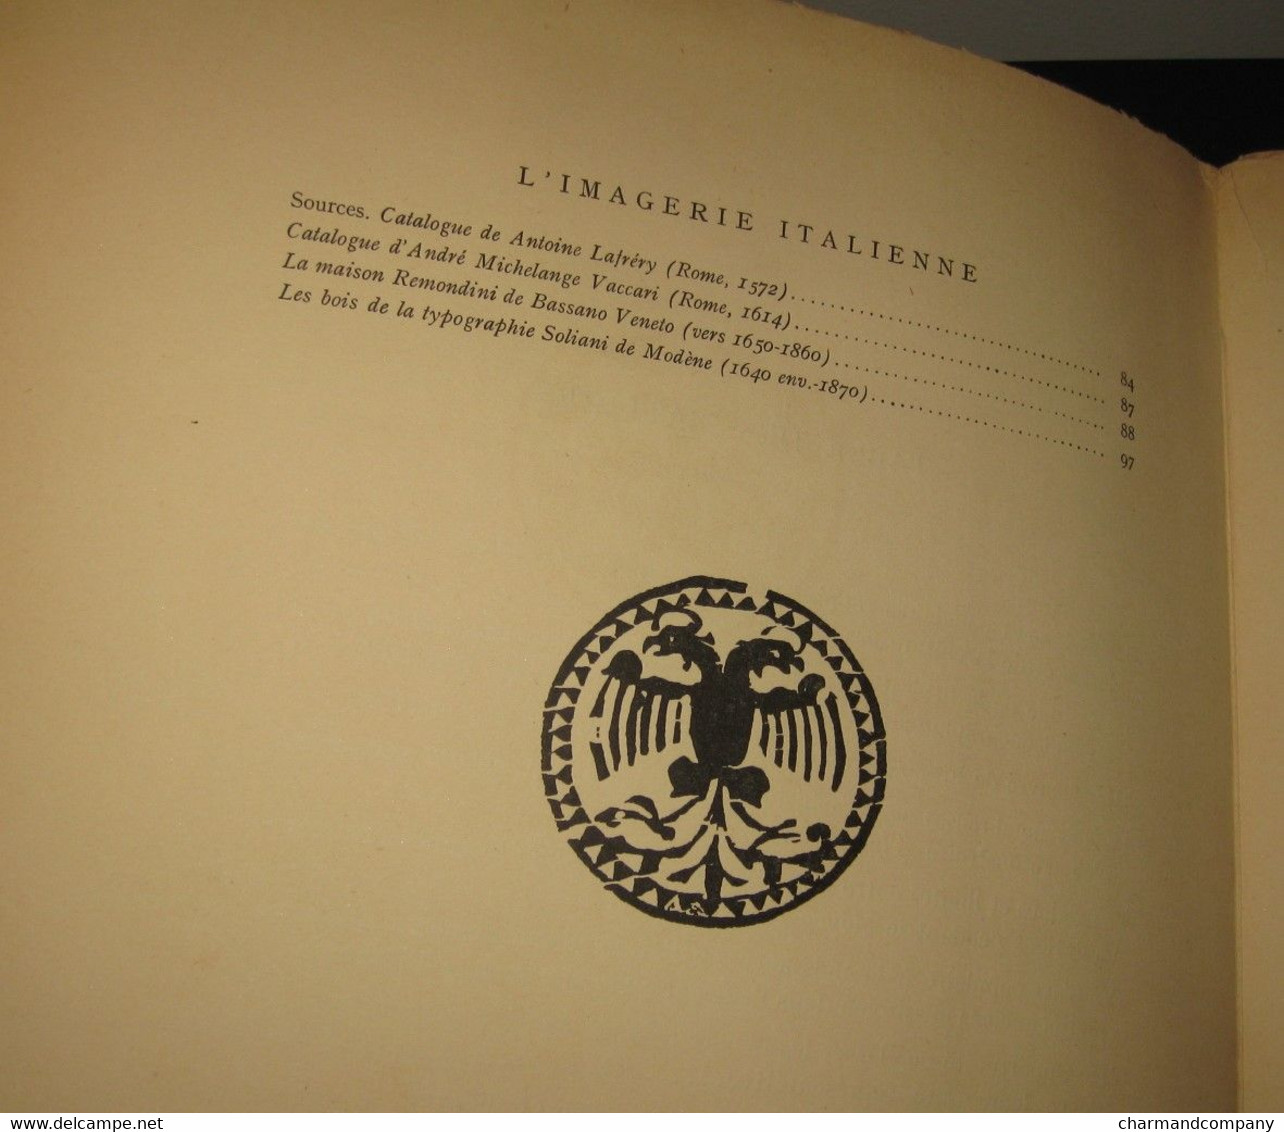 1929 L'Imagerie Populaire Italienne - Achille Bertarelli - Jeu de l'Oie - 6 hors texte aquarellés au pochoir